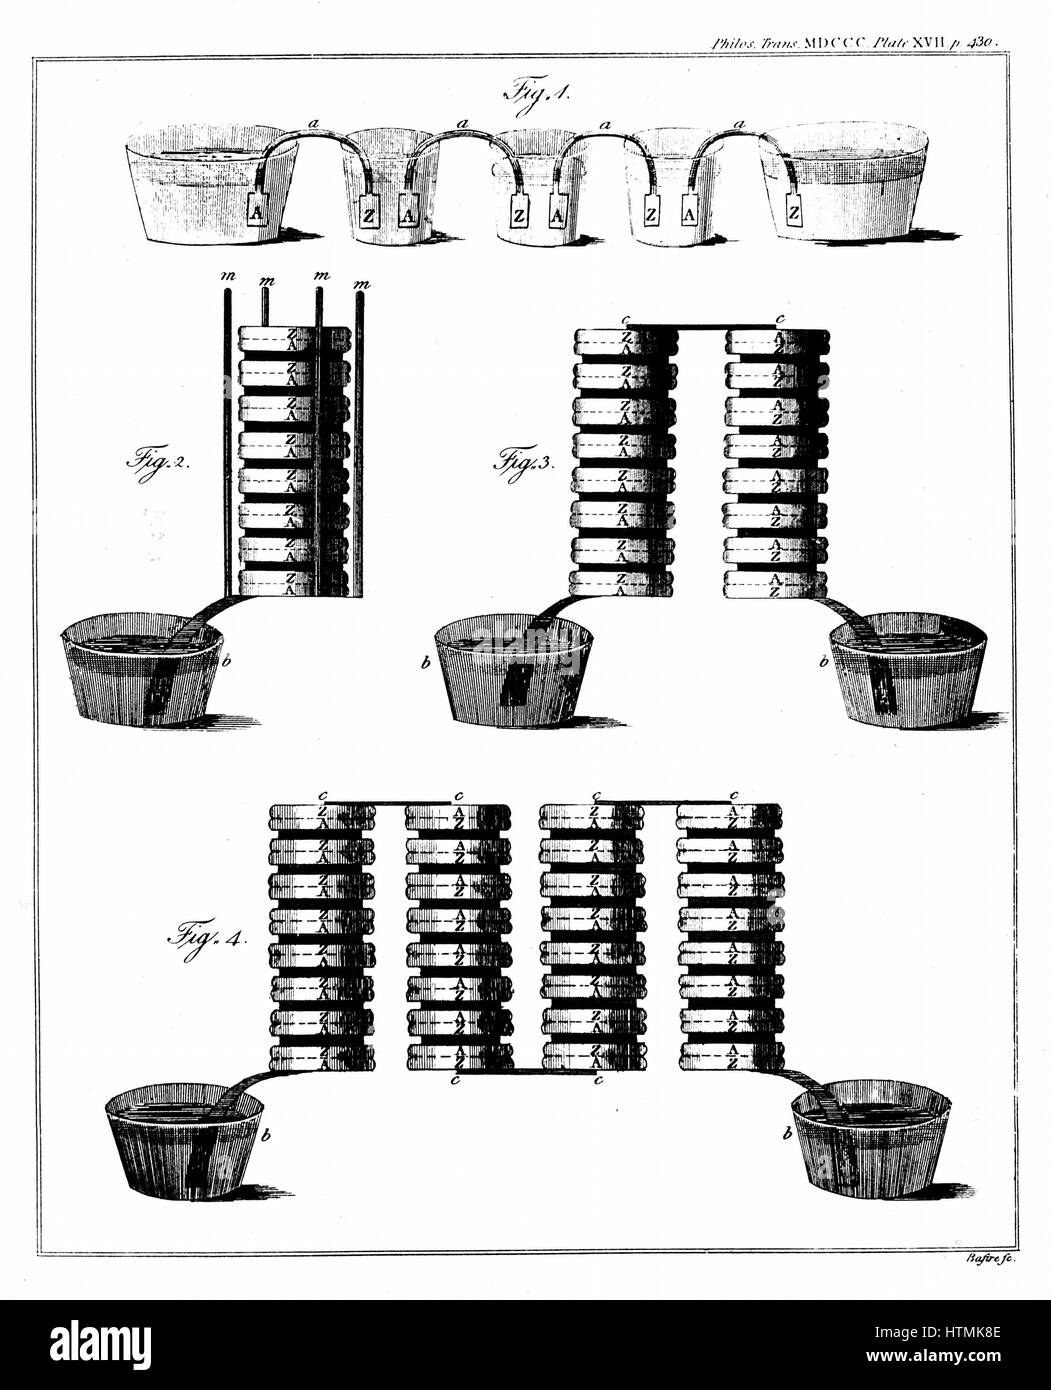 Alessandro Volta (1745-1827) physicien italien. Sa batterie (pile) de son article publié dans 'Philosophical Transactions de la Royal Society, Londres, 1800 Banque D'Images